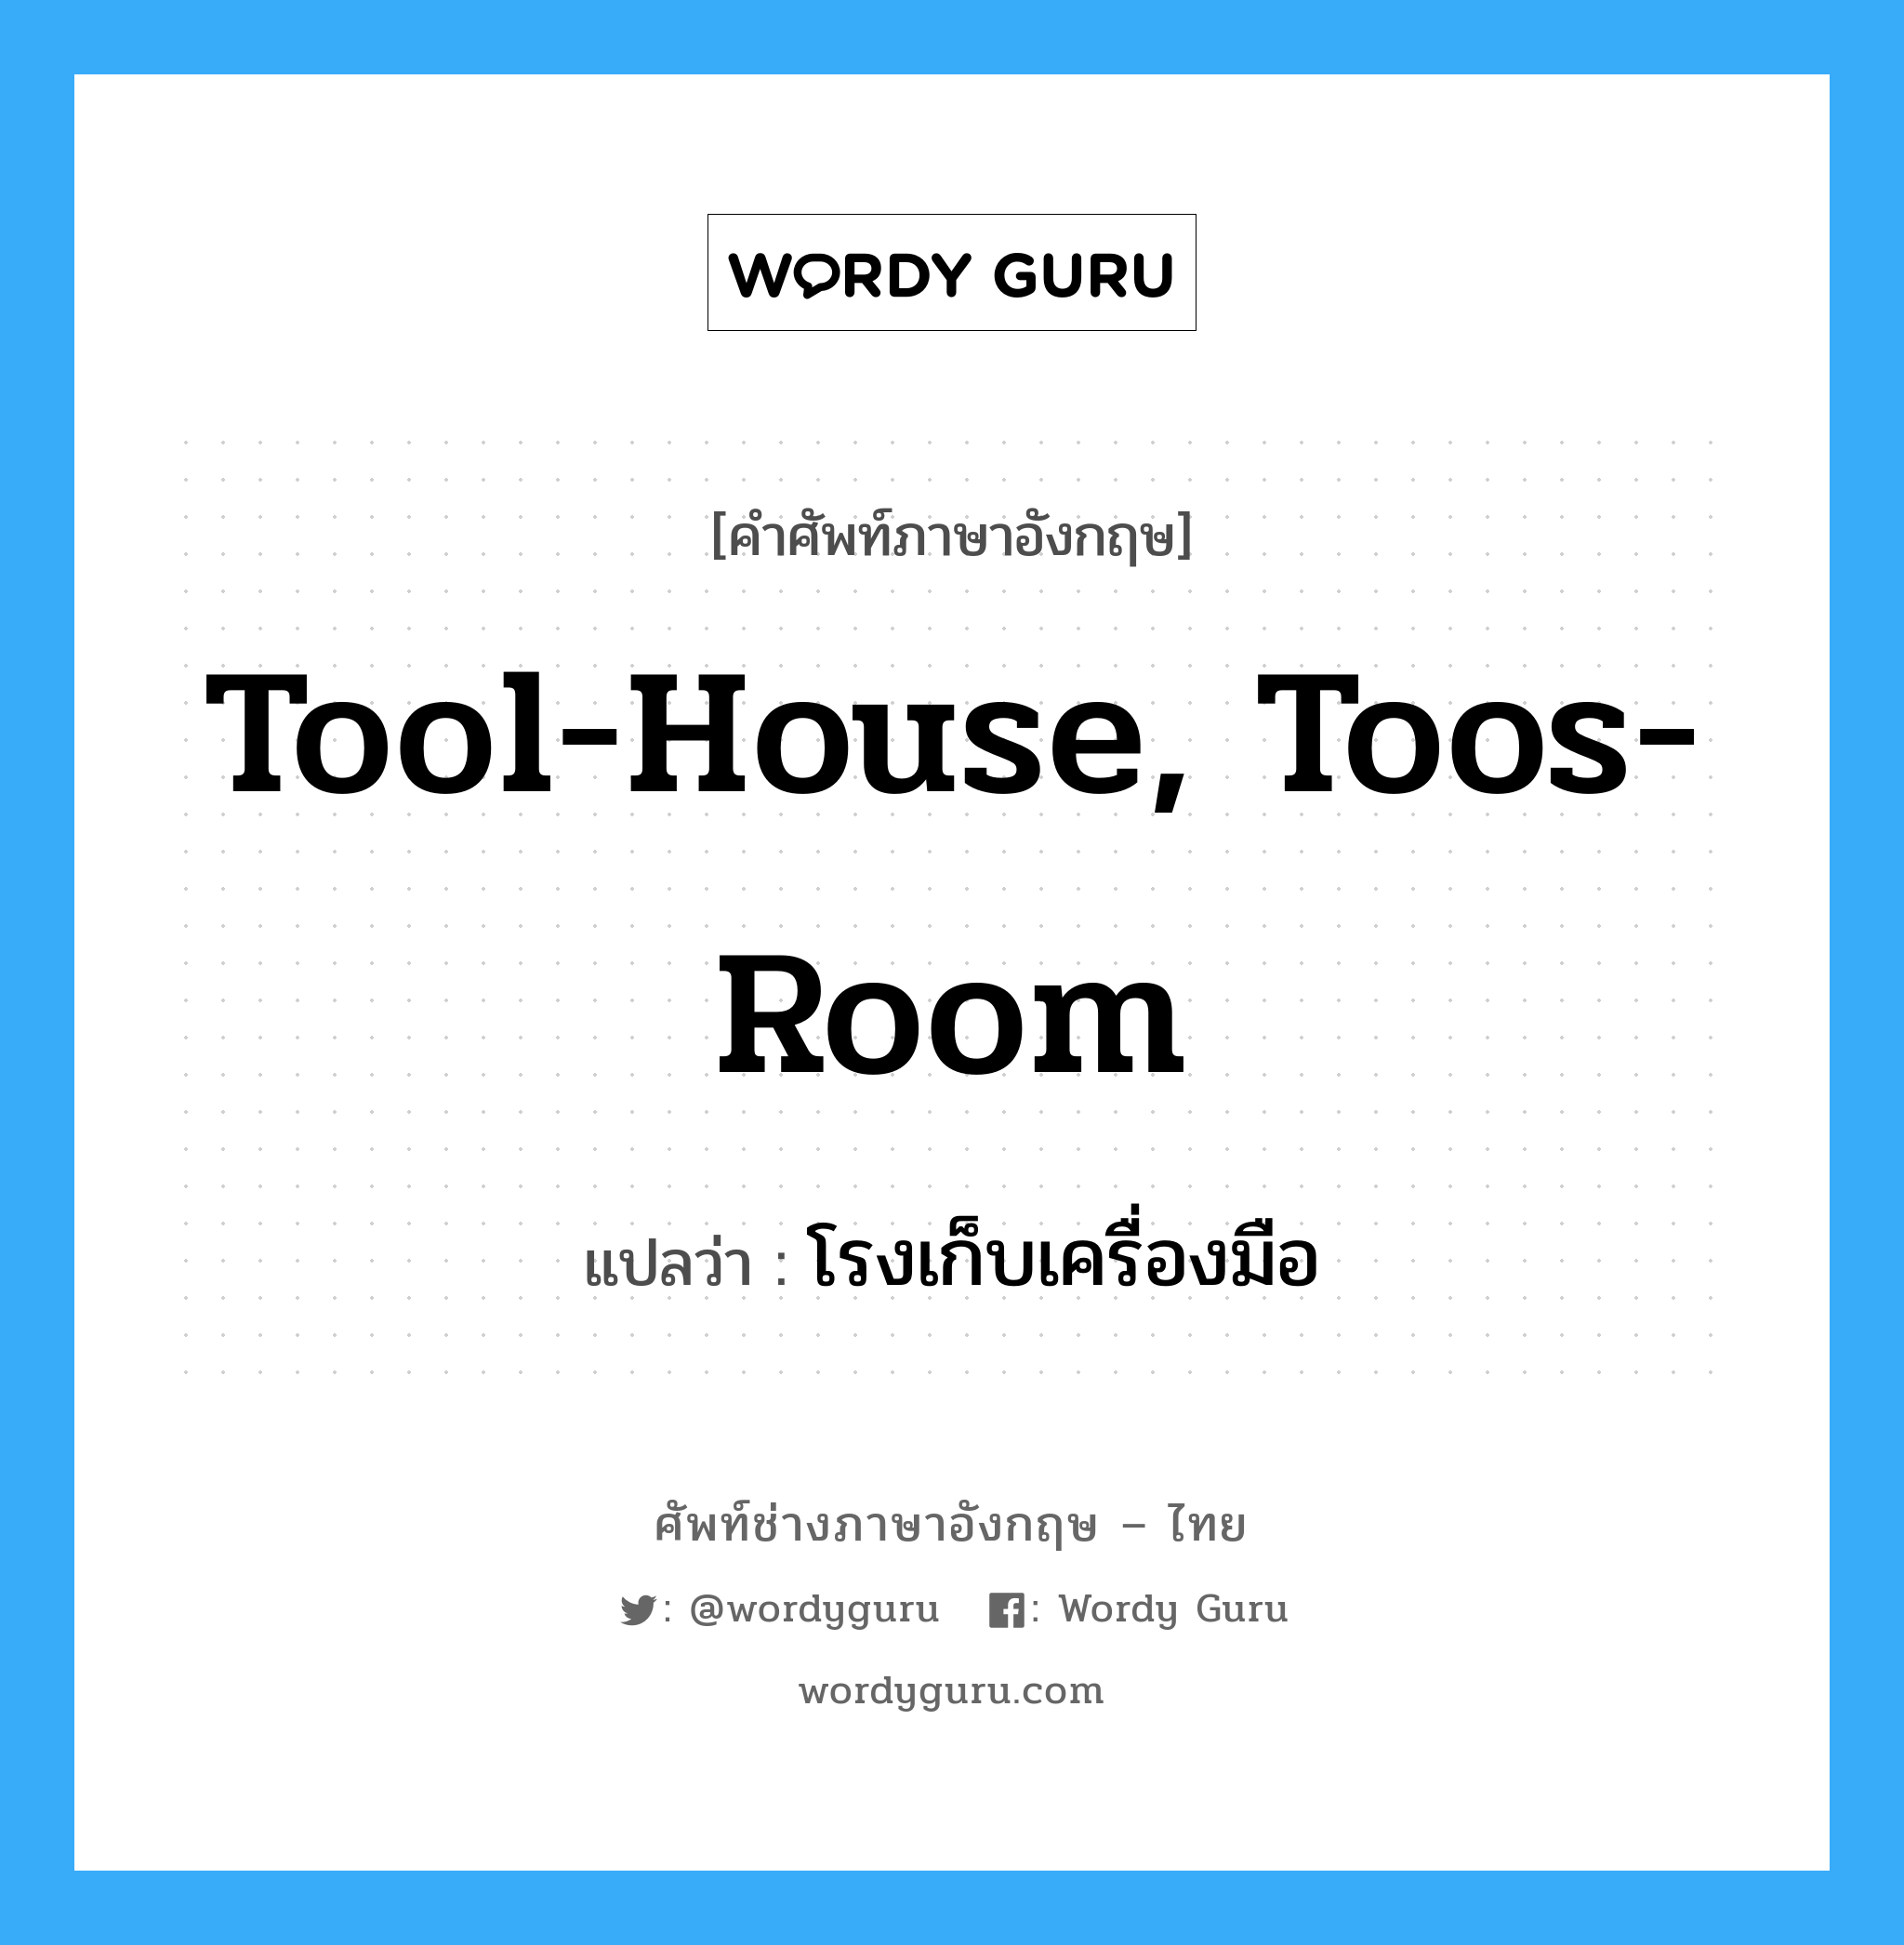 โรงเก็บเครื่องมือ ภาษาอังกฤษ?, คำศัพท์ช่างภาษาอังกฤษ - ไทย โรงเก็บเครื่องมือ คำศัพท์ภาษาอังกฤษ โรงเก็บเครื่องมือ แปลว่า tool-house, toos-room